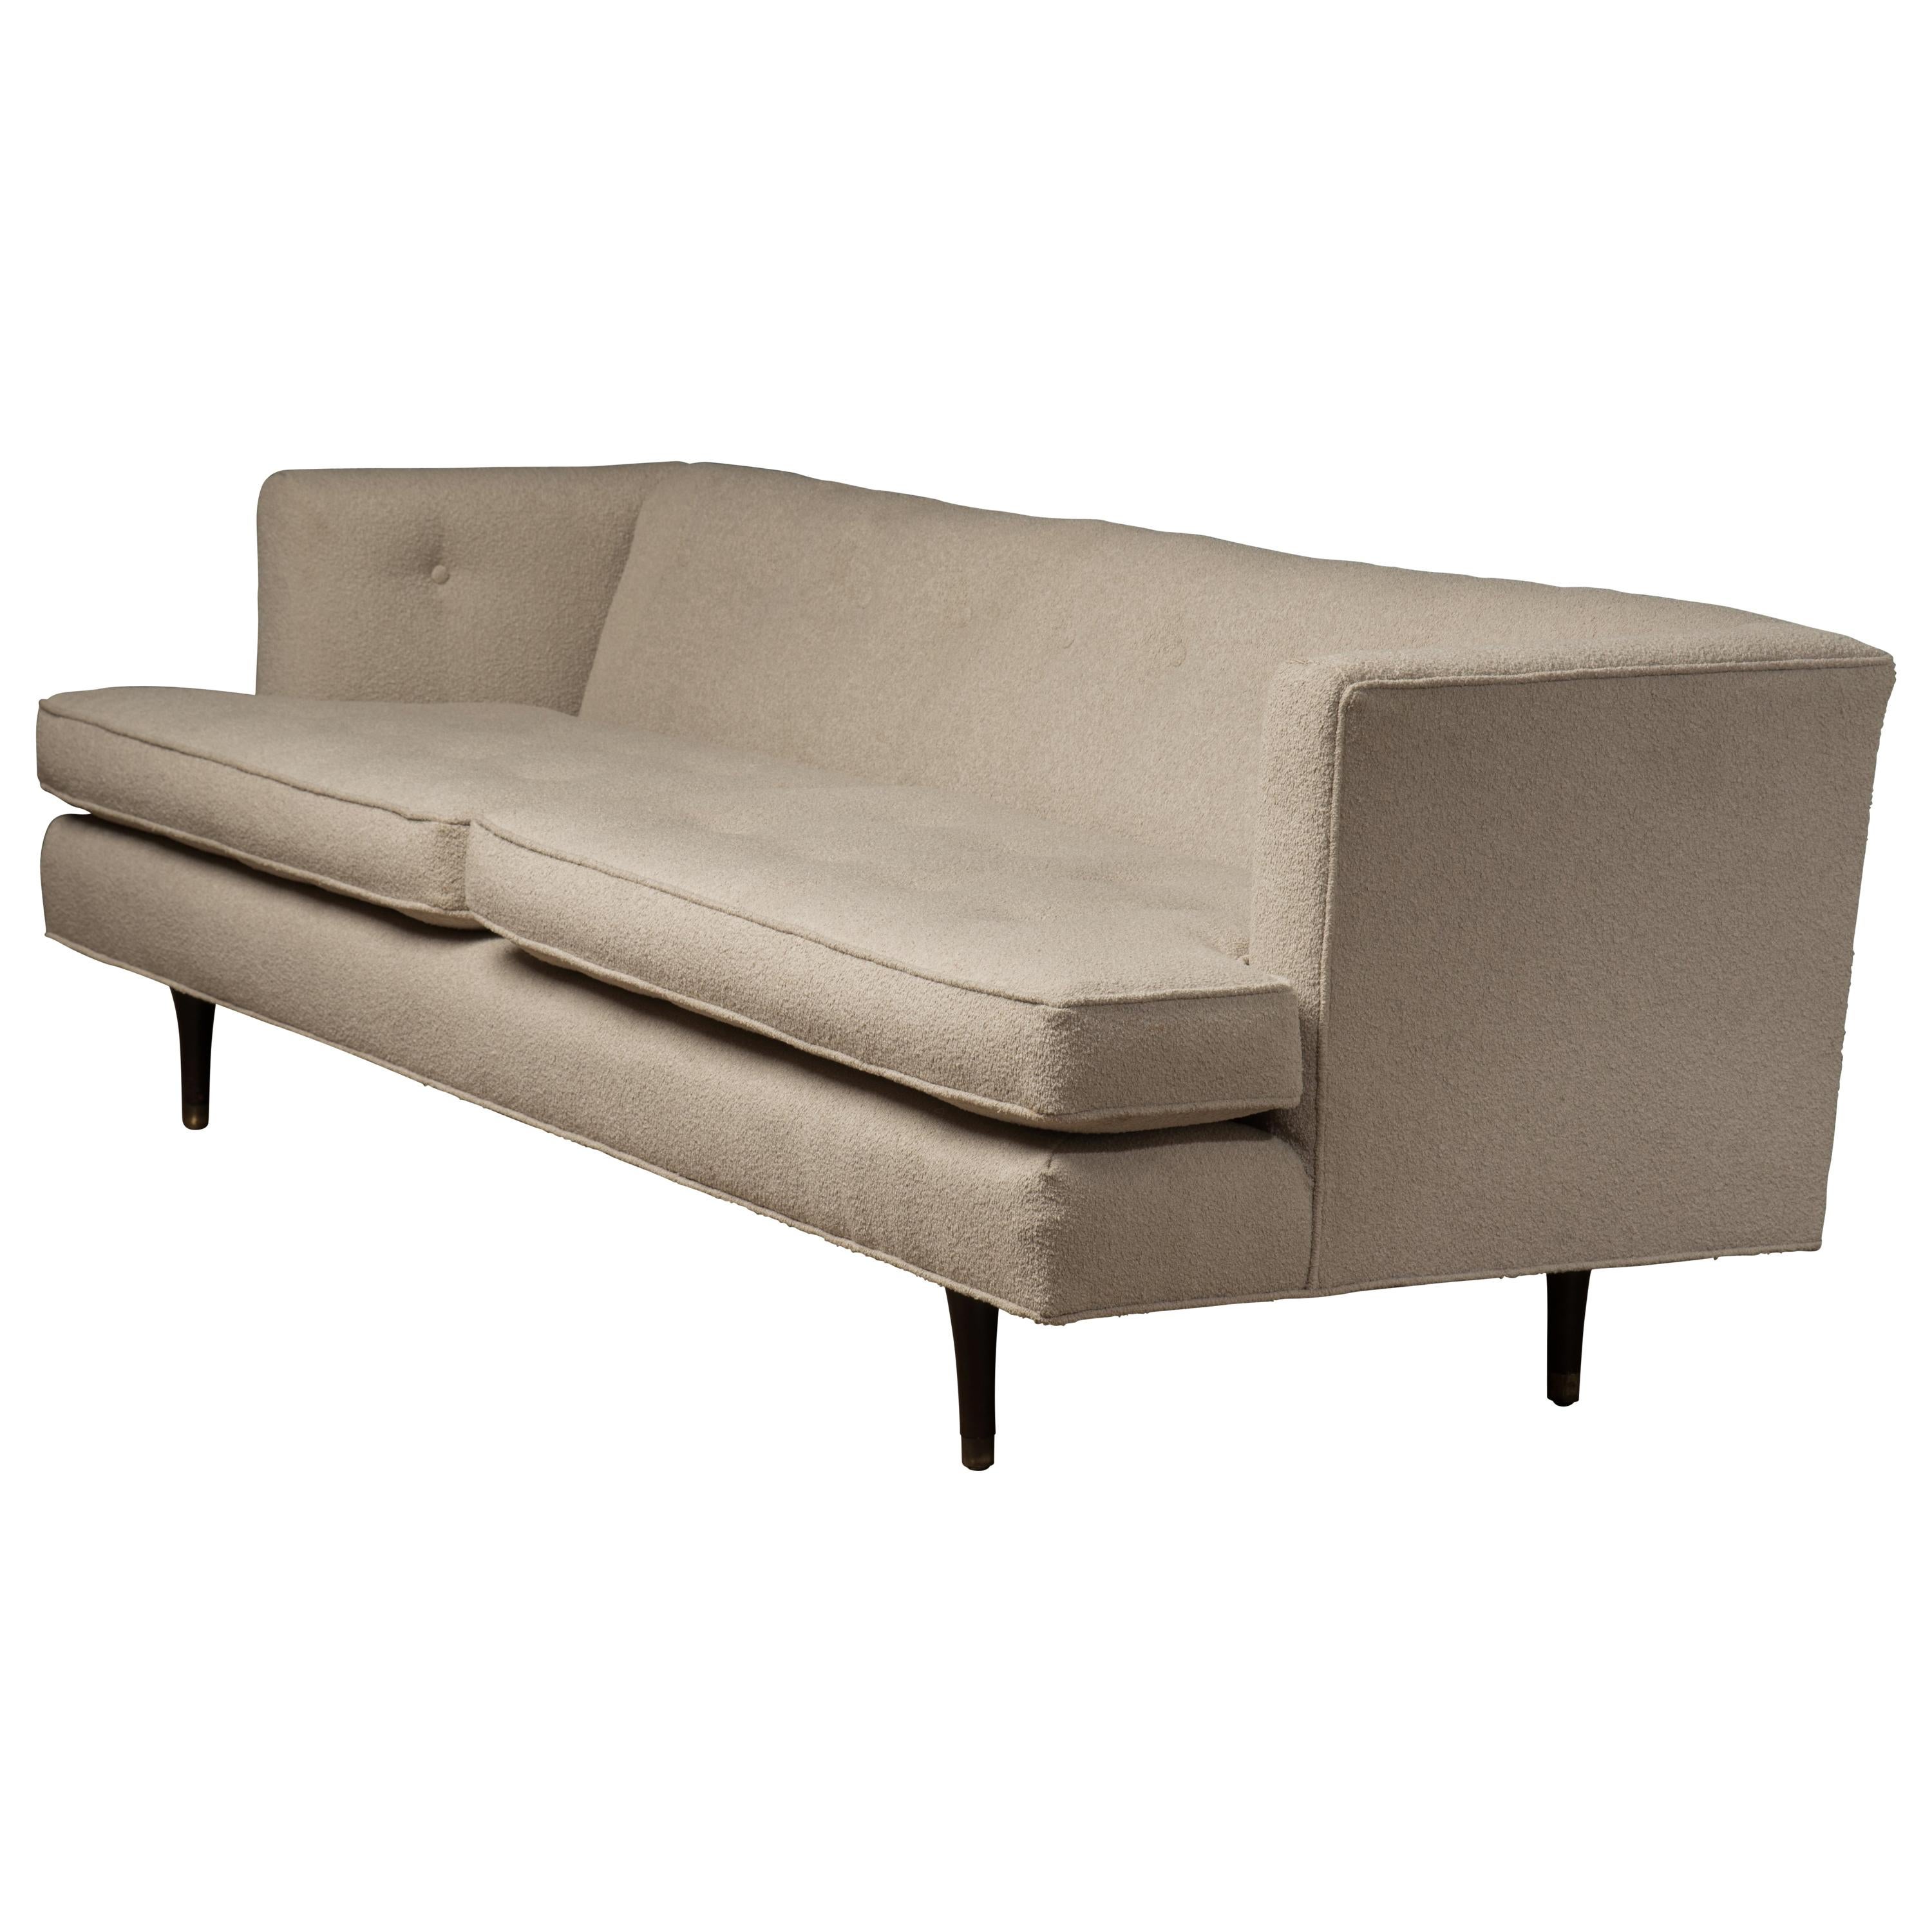 Iconic Glam Midcentury Modern Dunbar Sofa by Edward Wormley